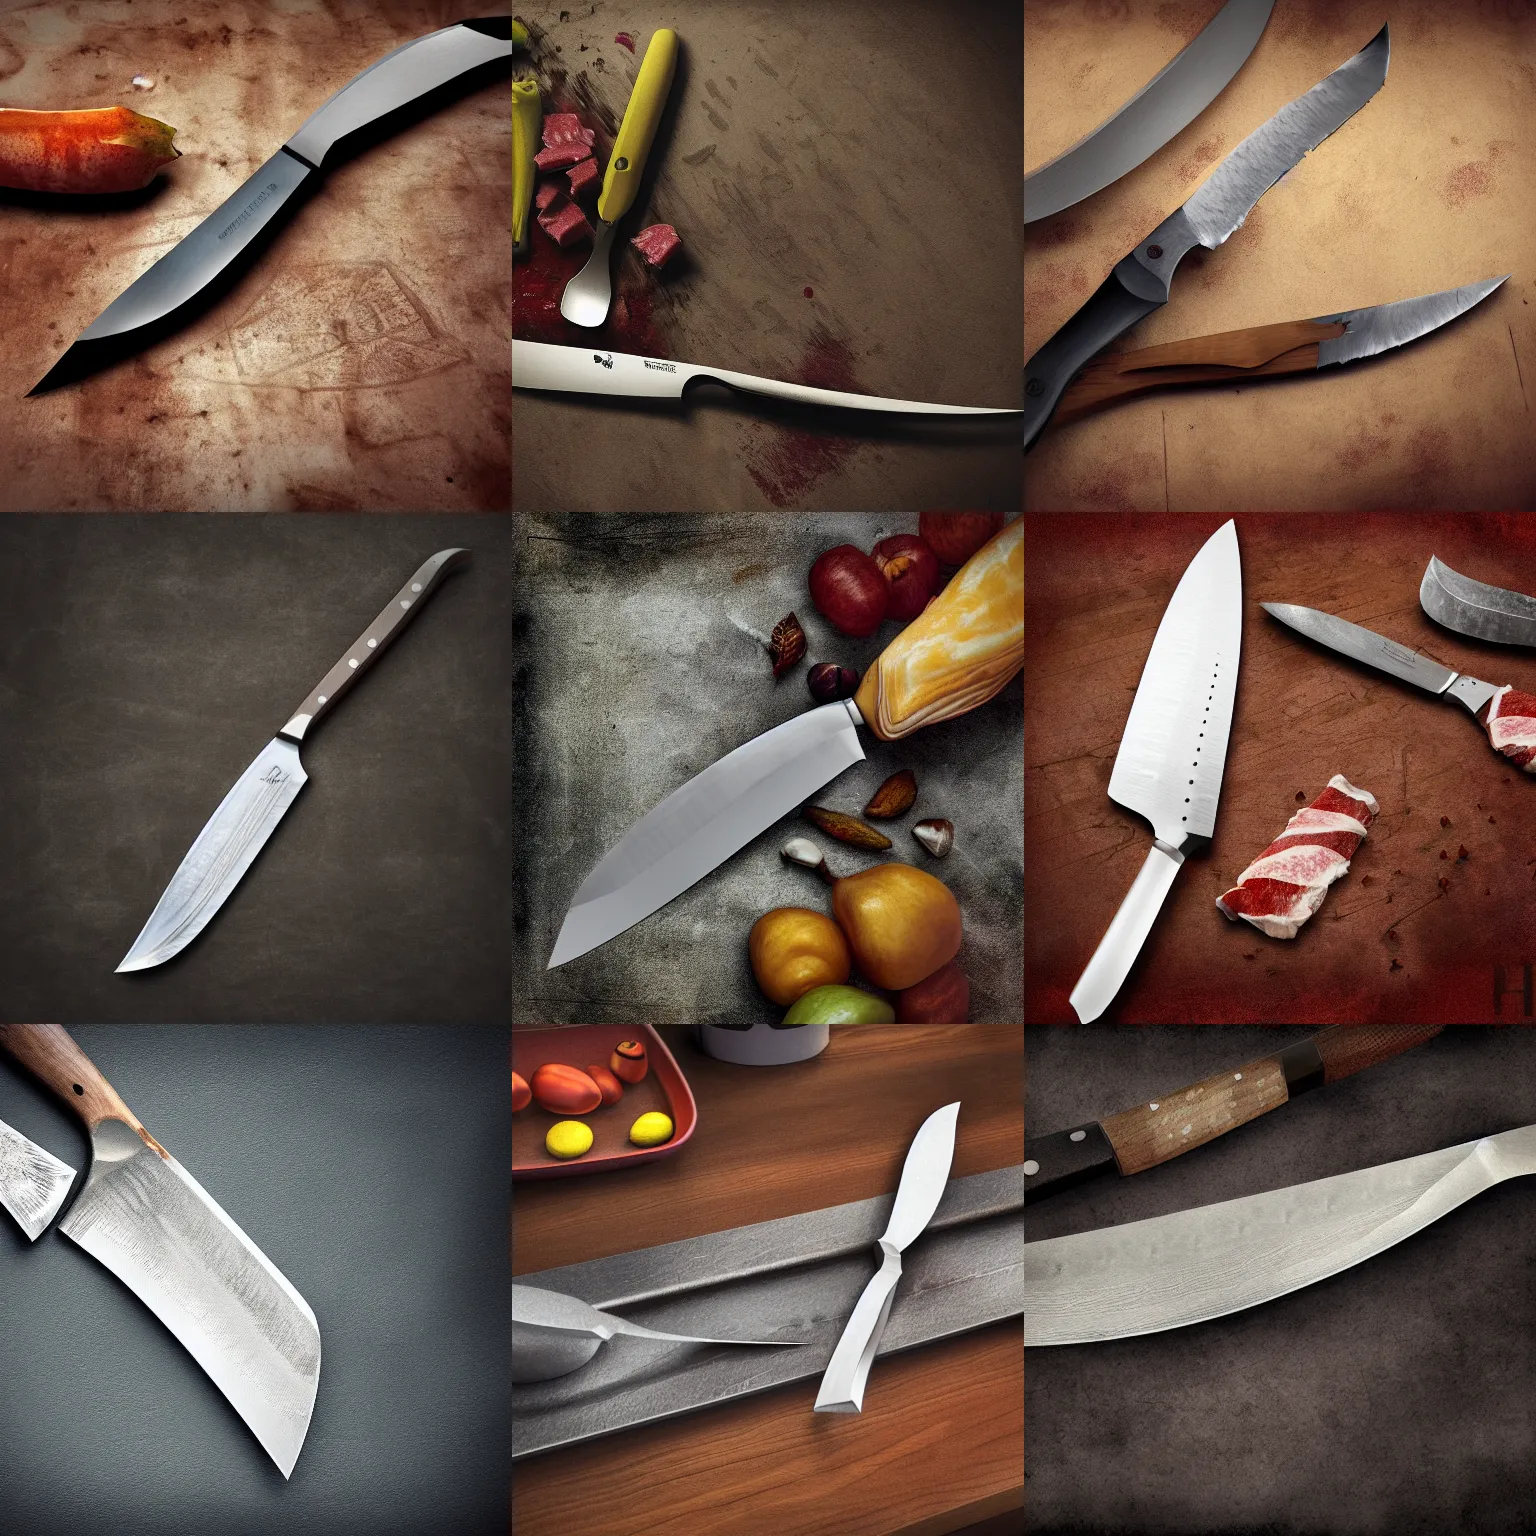 Prompt: butcher knife on the kitchen table, fantasy digital art, high detail, octane render